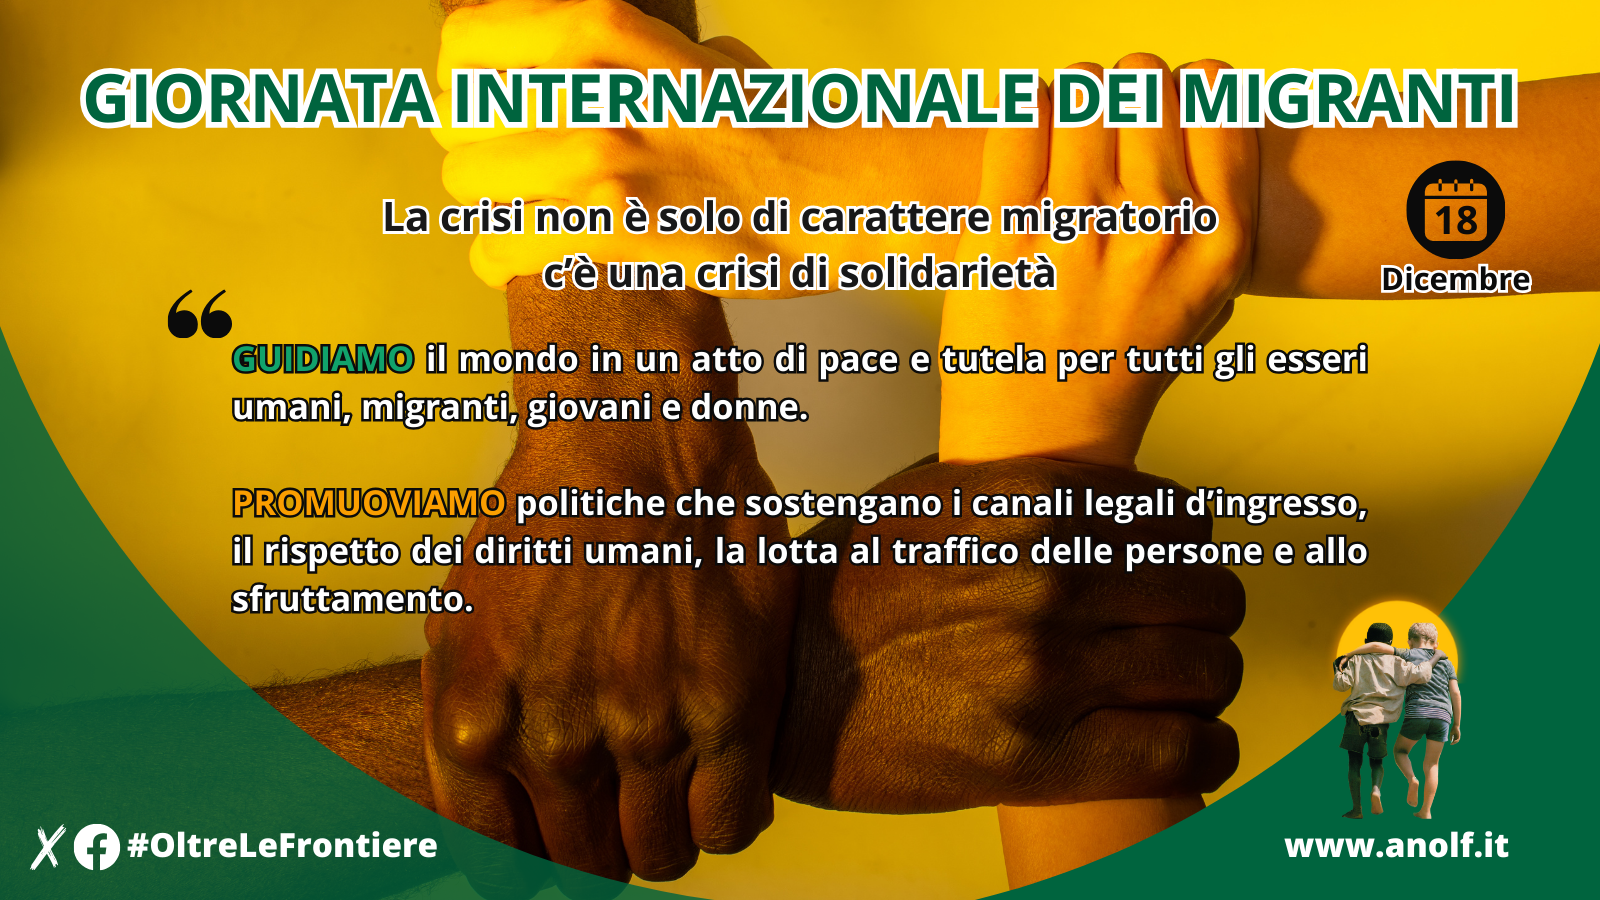 18 dicembre – Giornata Internazionale dei Migranti. ANOLF “La crisi non è solo di carattere migratorio, c’è una crisi di solidarietà”.